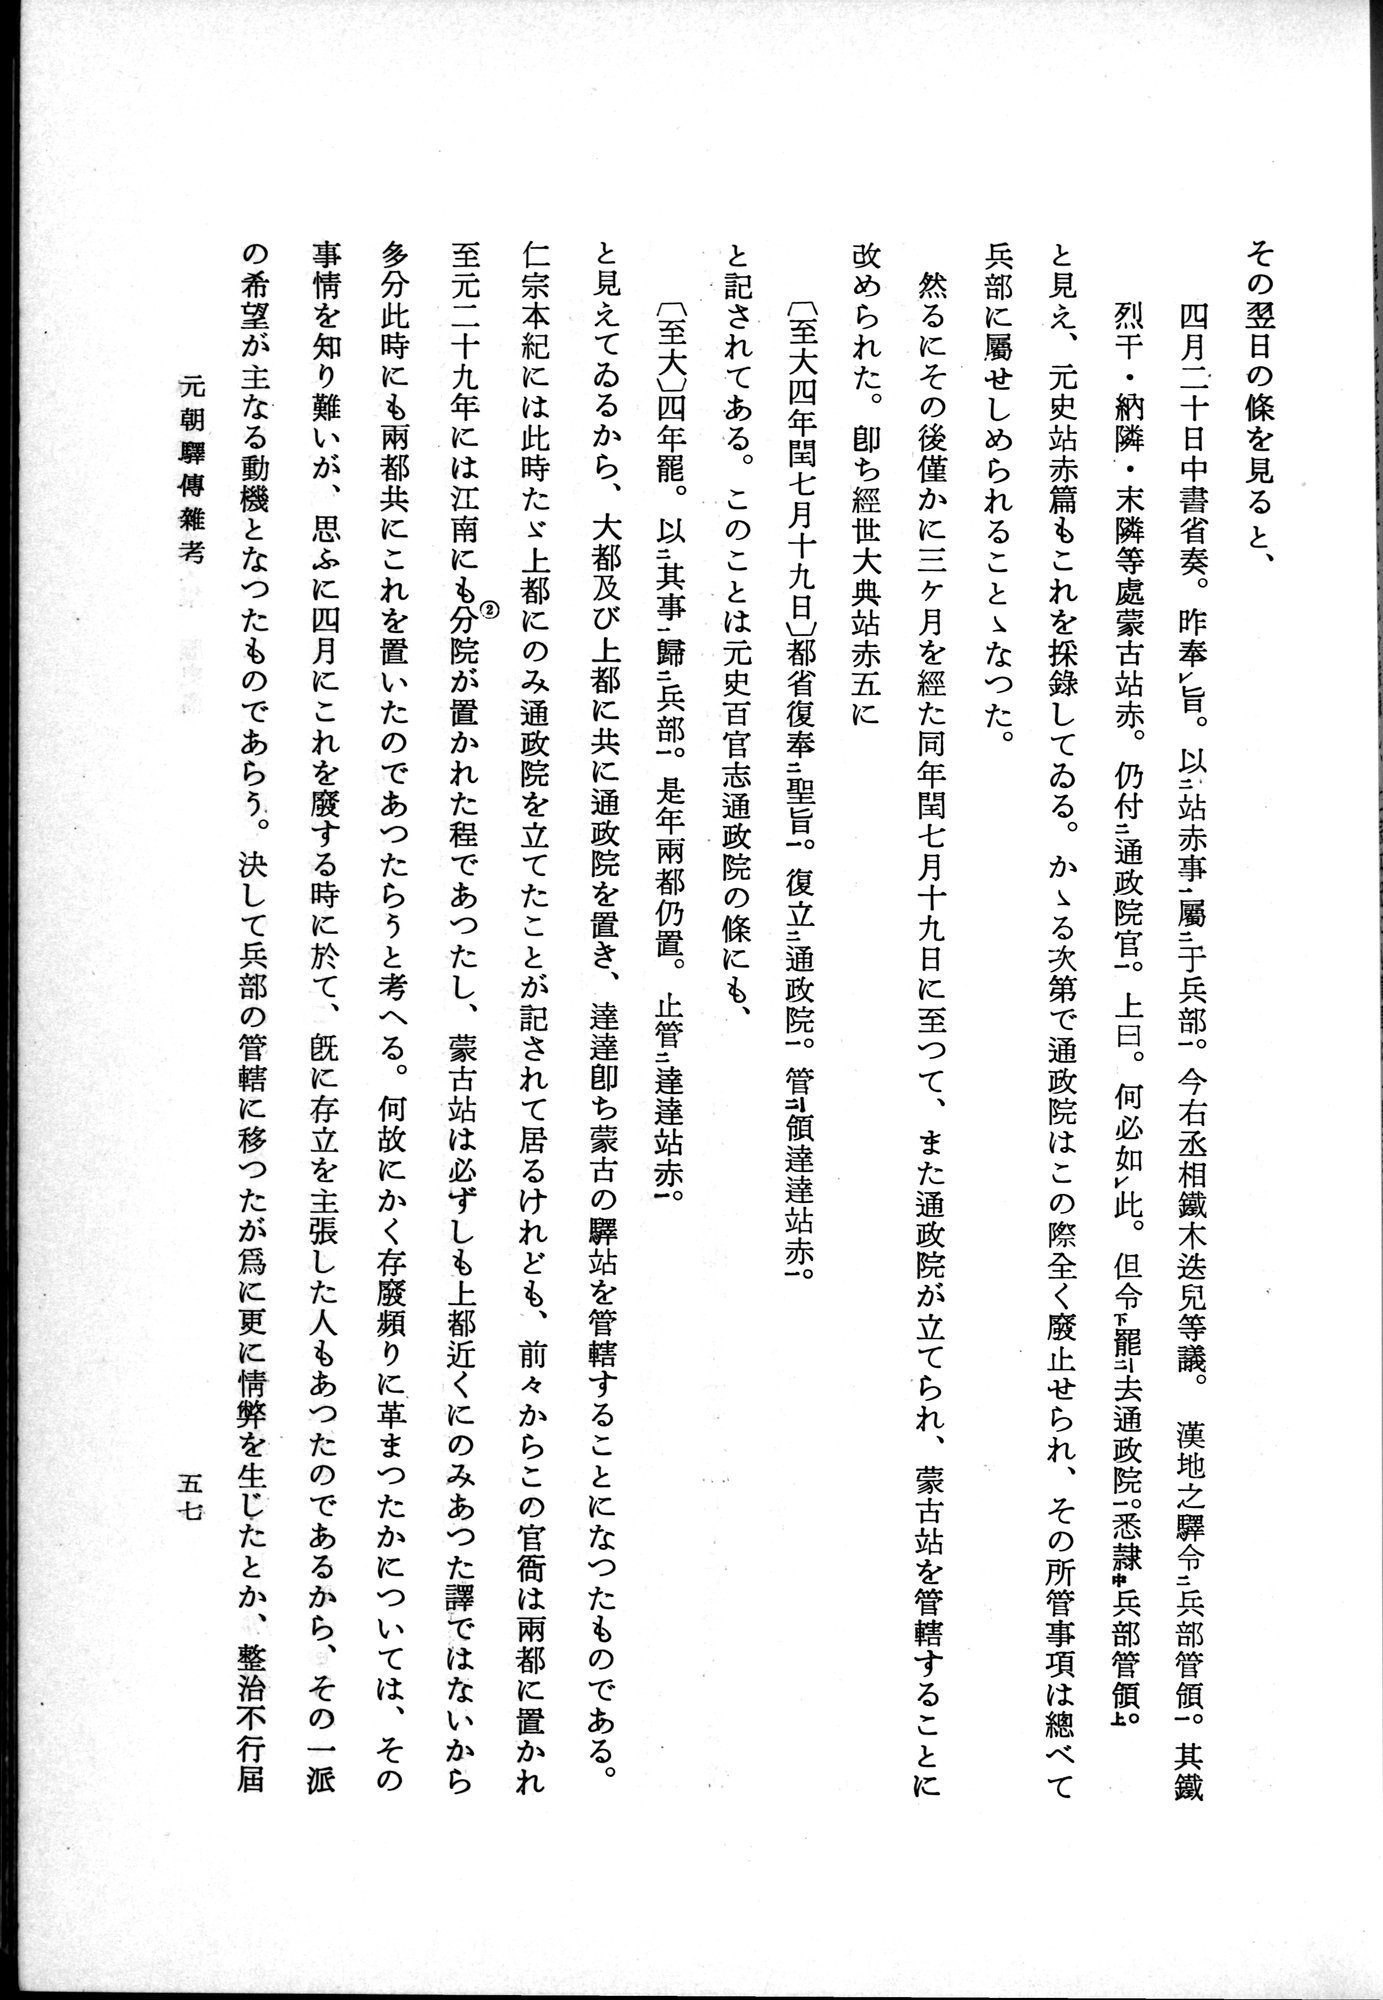 羽田博士史学論文集 : vol.1 / Page 95 (Grayscale High Resolution Image)